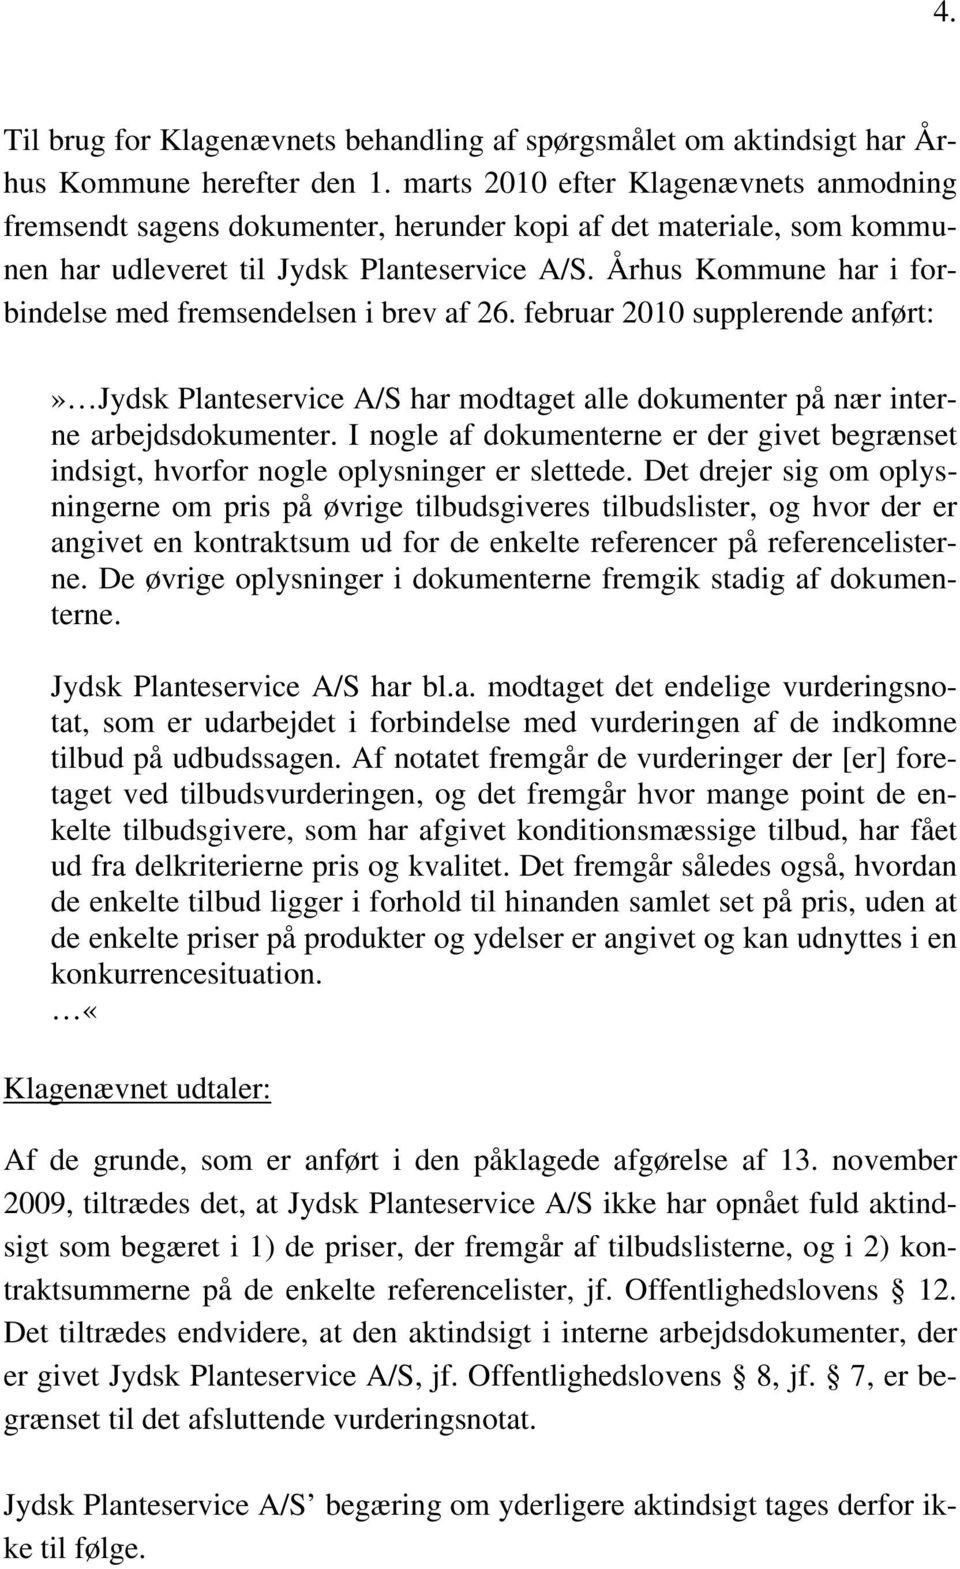 Århus Kommune har i forbindelse med fremsendelsen i brev af 26. februar 2010 supplerende anført:» Jydsk Planteservice A/S har modtaget alle dokumenter på nær interne arbejdsdokumenter.